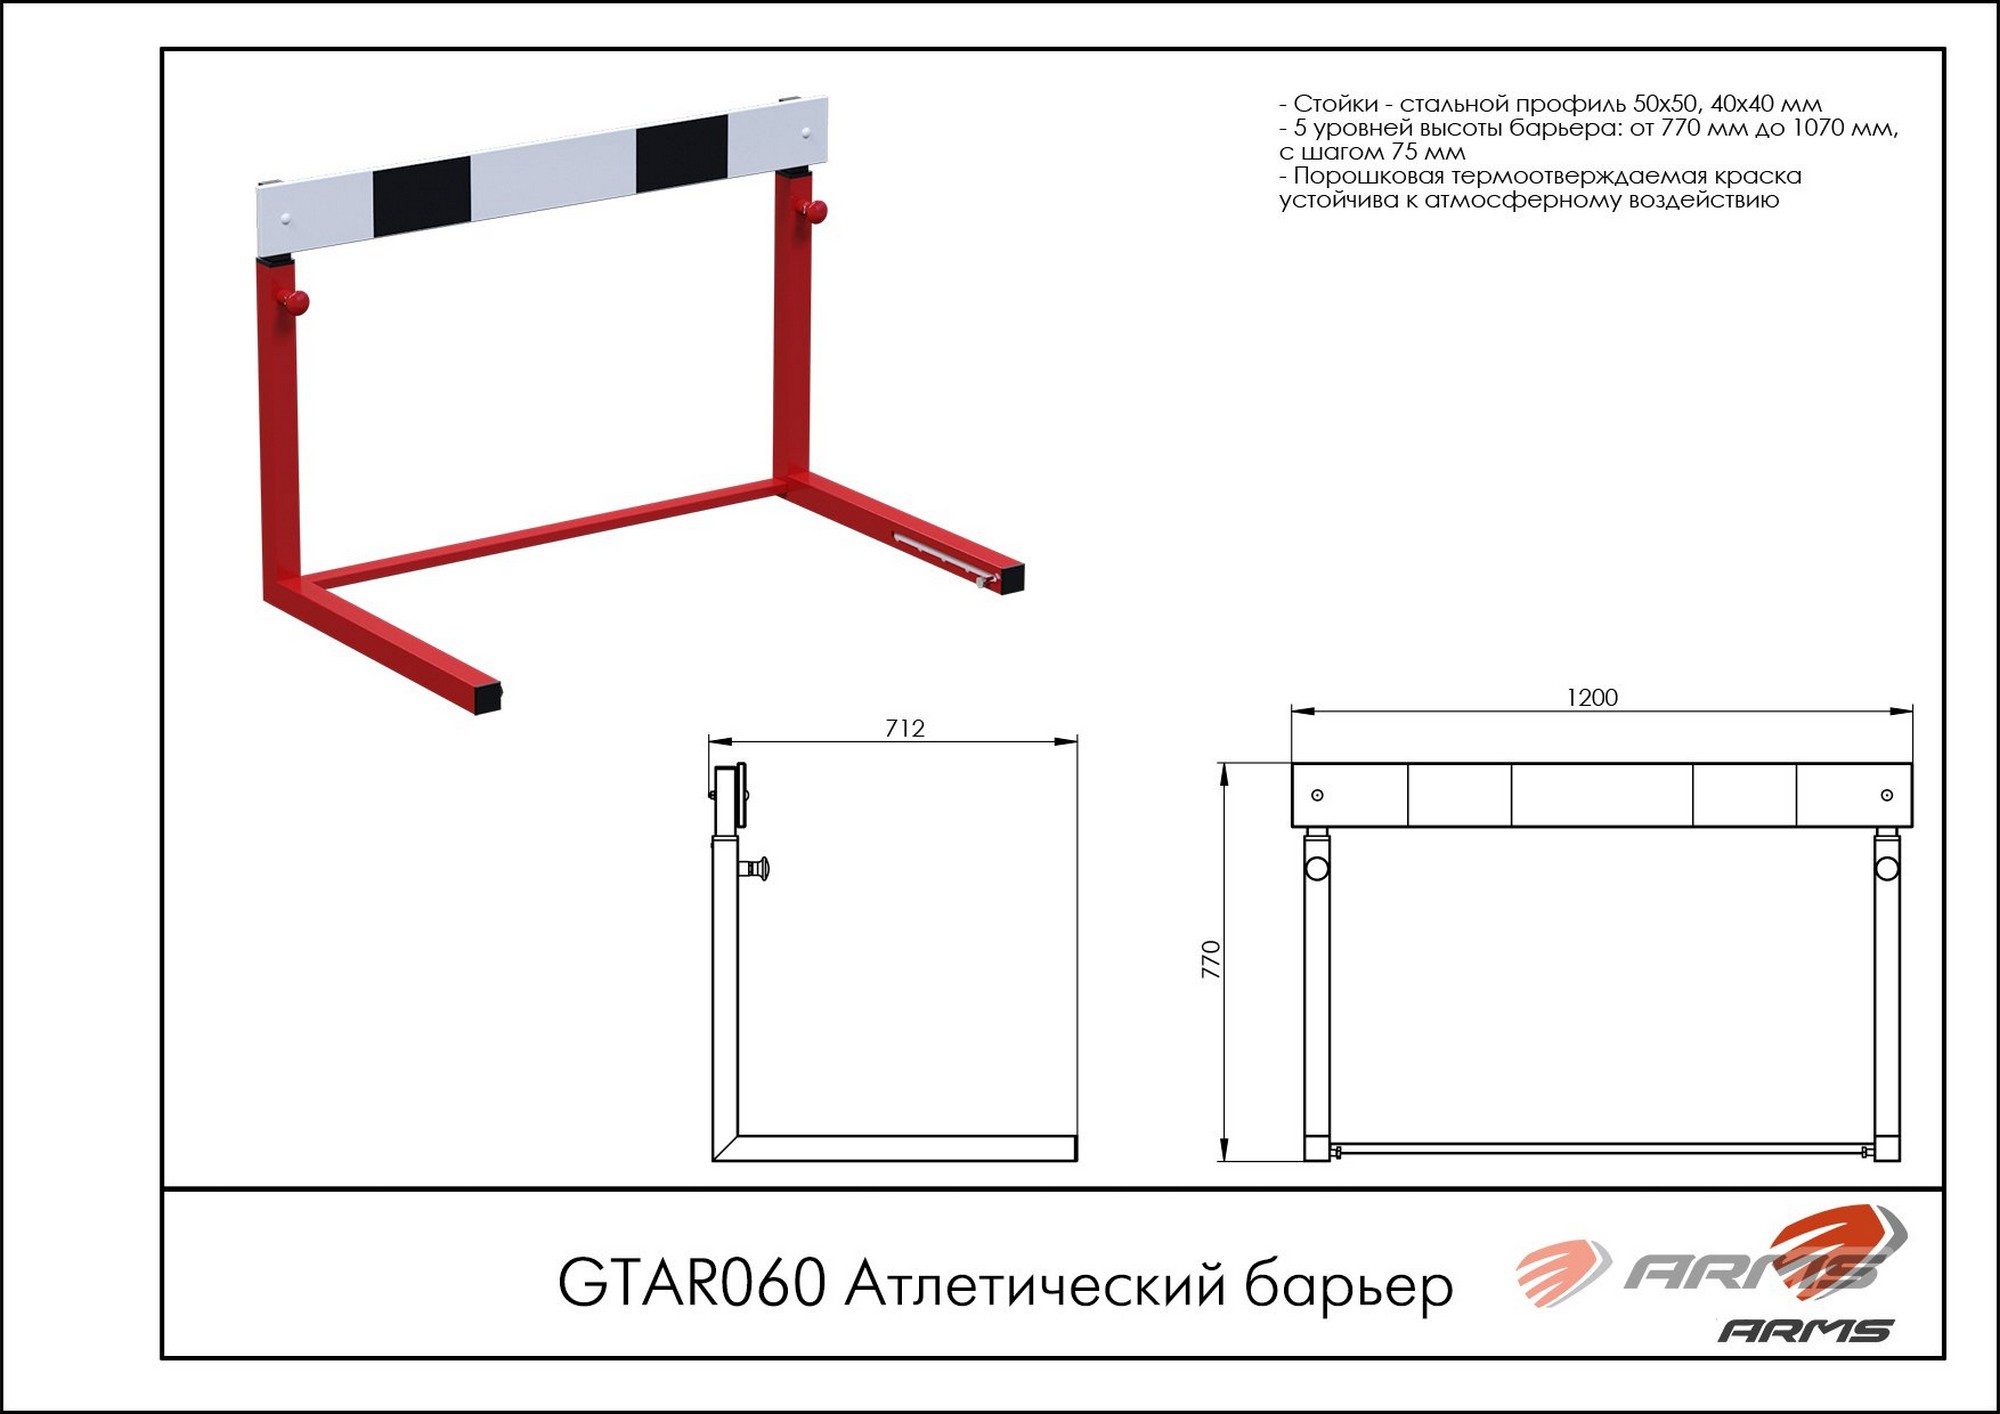 Атлетический барьер ARMS GTAR60 2000_1414